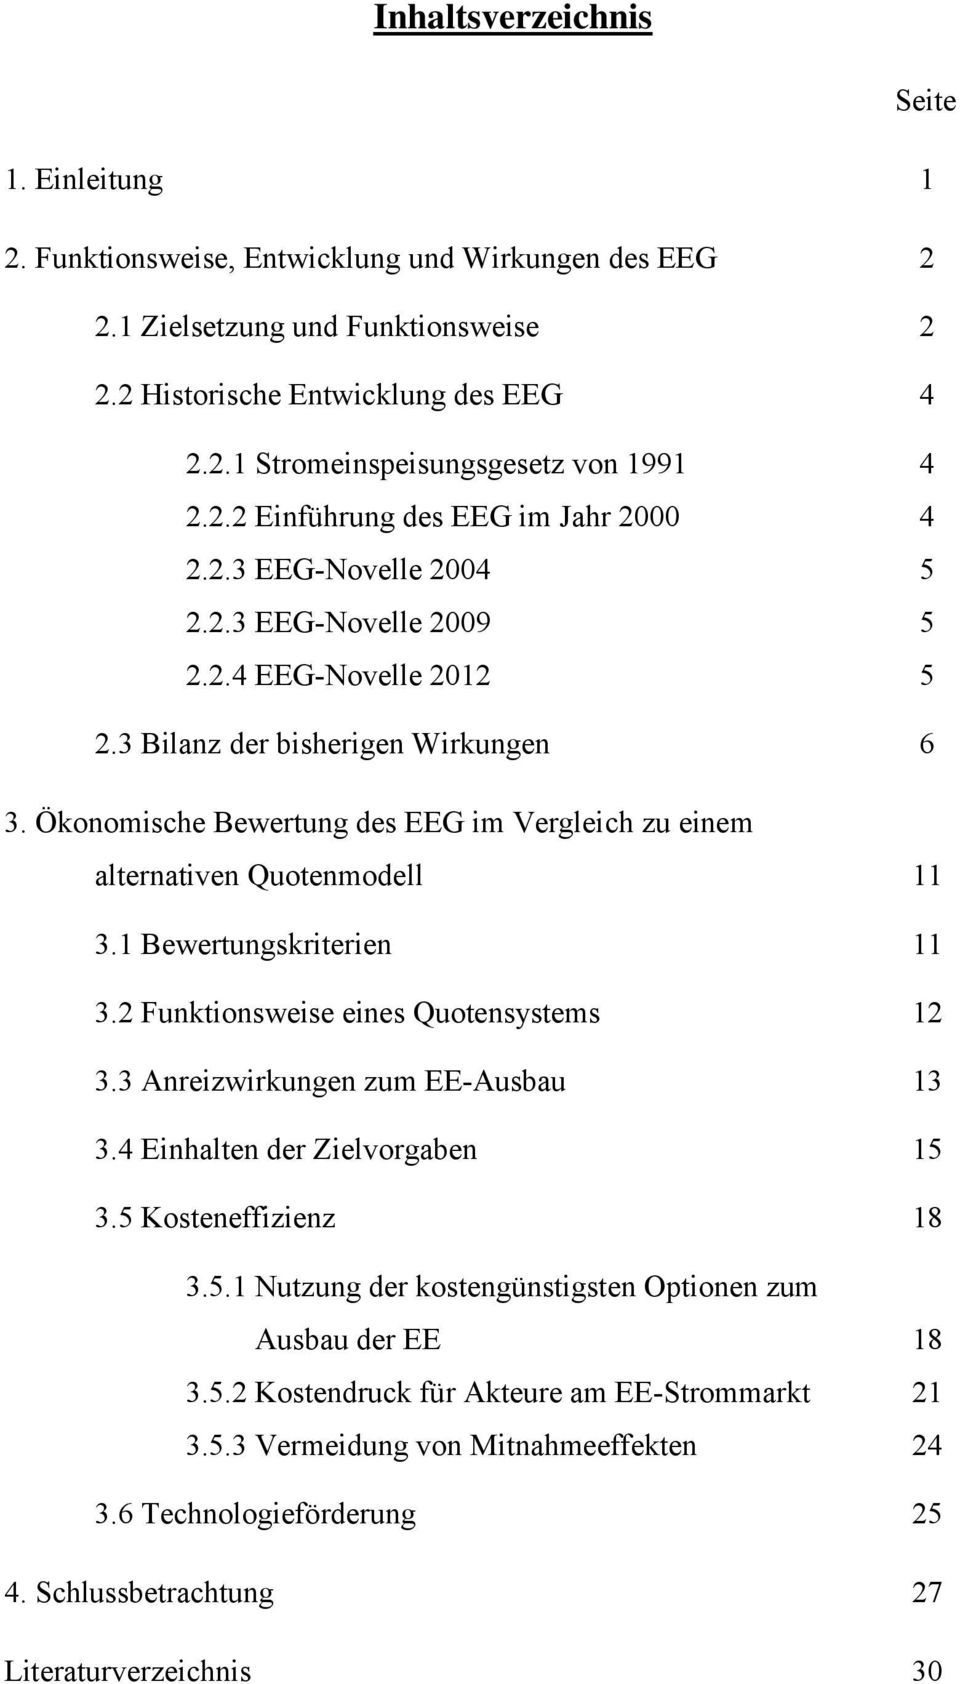 Ökonomische Bewertung des EEG im Vergleich zu einem alternativen Quotenmodell 11 3.1 Bewertungskriterien 11 3.2 Funktionsweise eines Quotensystems 12 3.3 Anreizwirkungen zum EE-Ausbau 13 3.